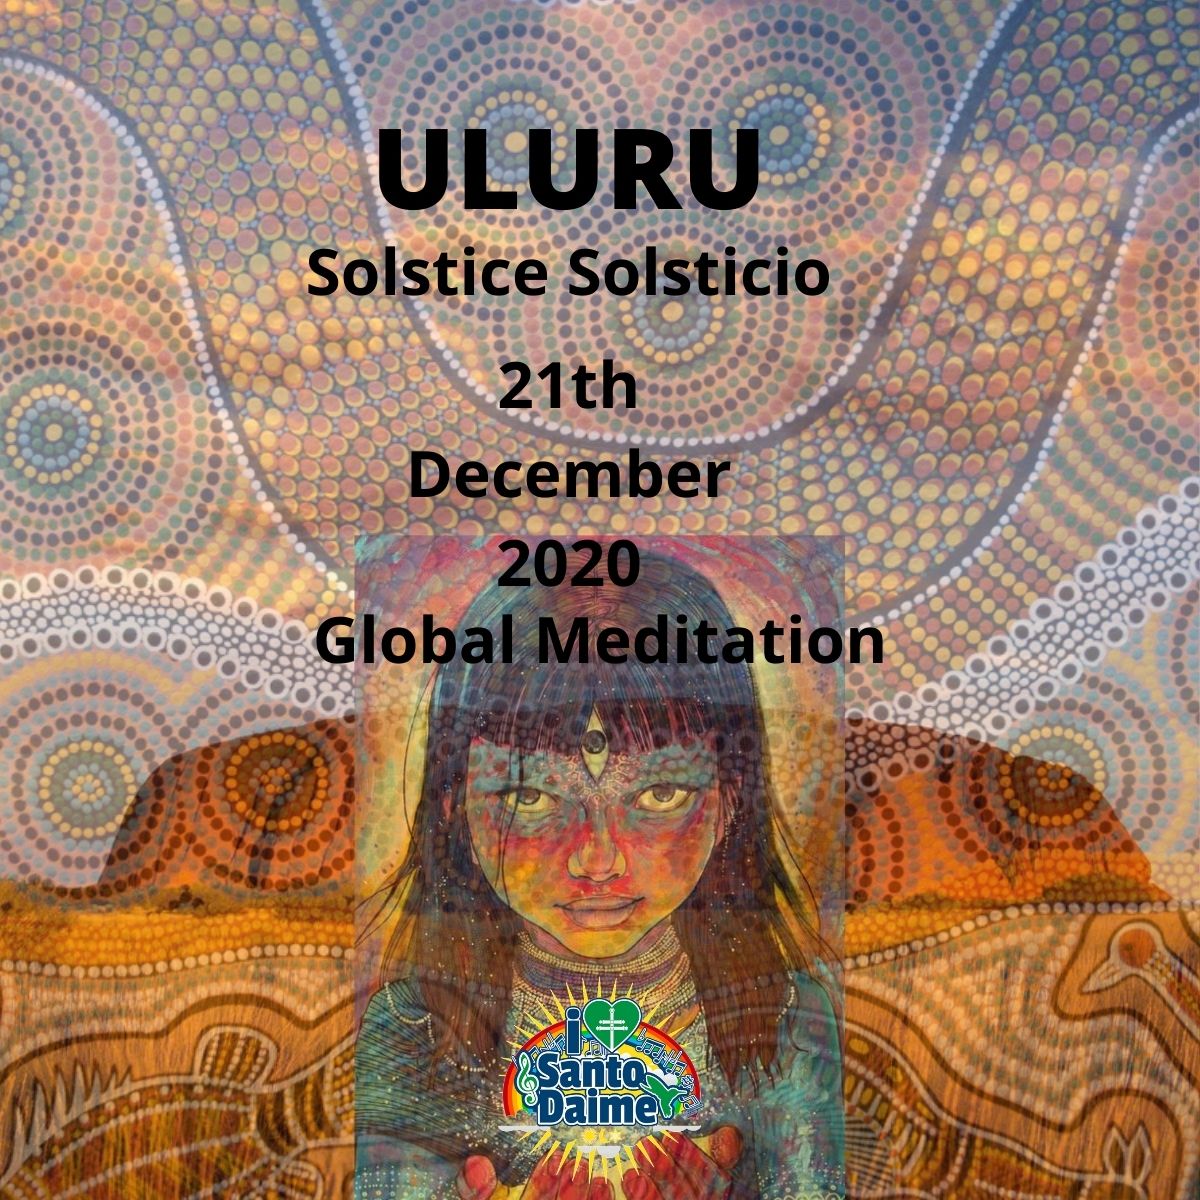 Meditación global, los nativos australianos de Uluru piden que se replique por toda la Madre tierra."Uluru" Más información aquí sobre la preparación para la Ceremonia